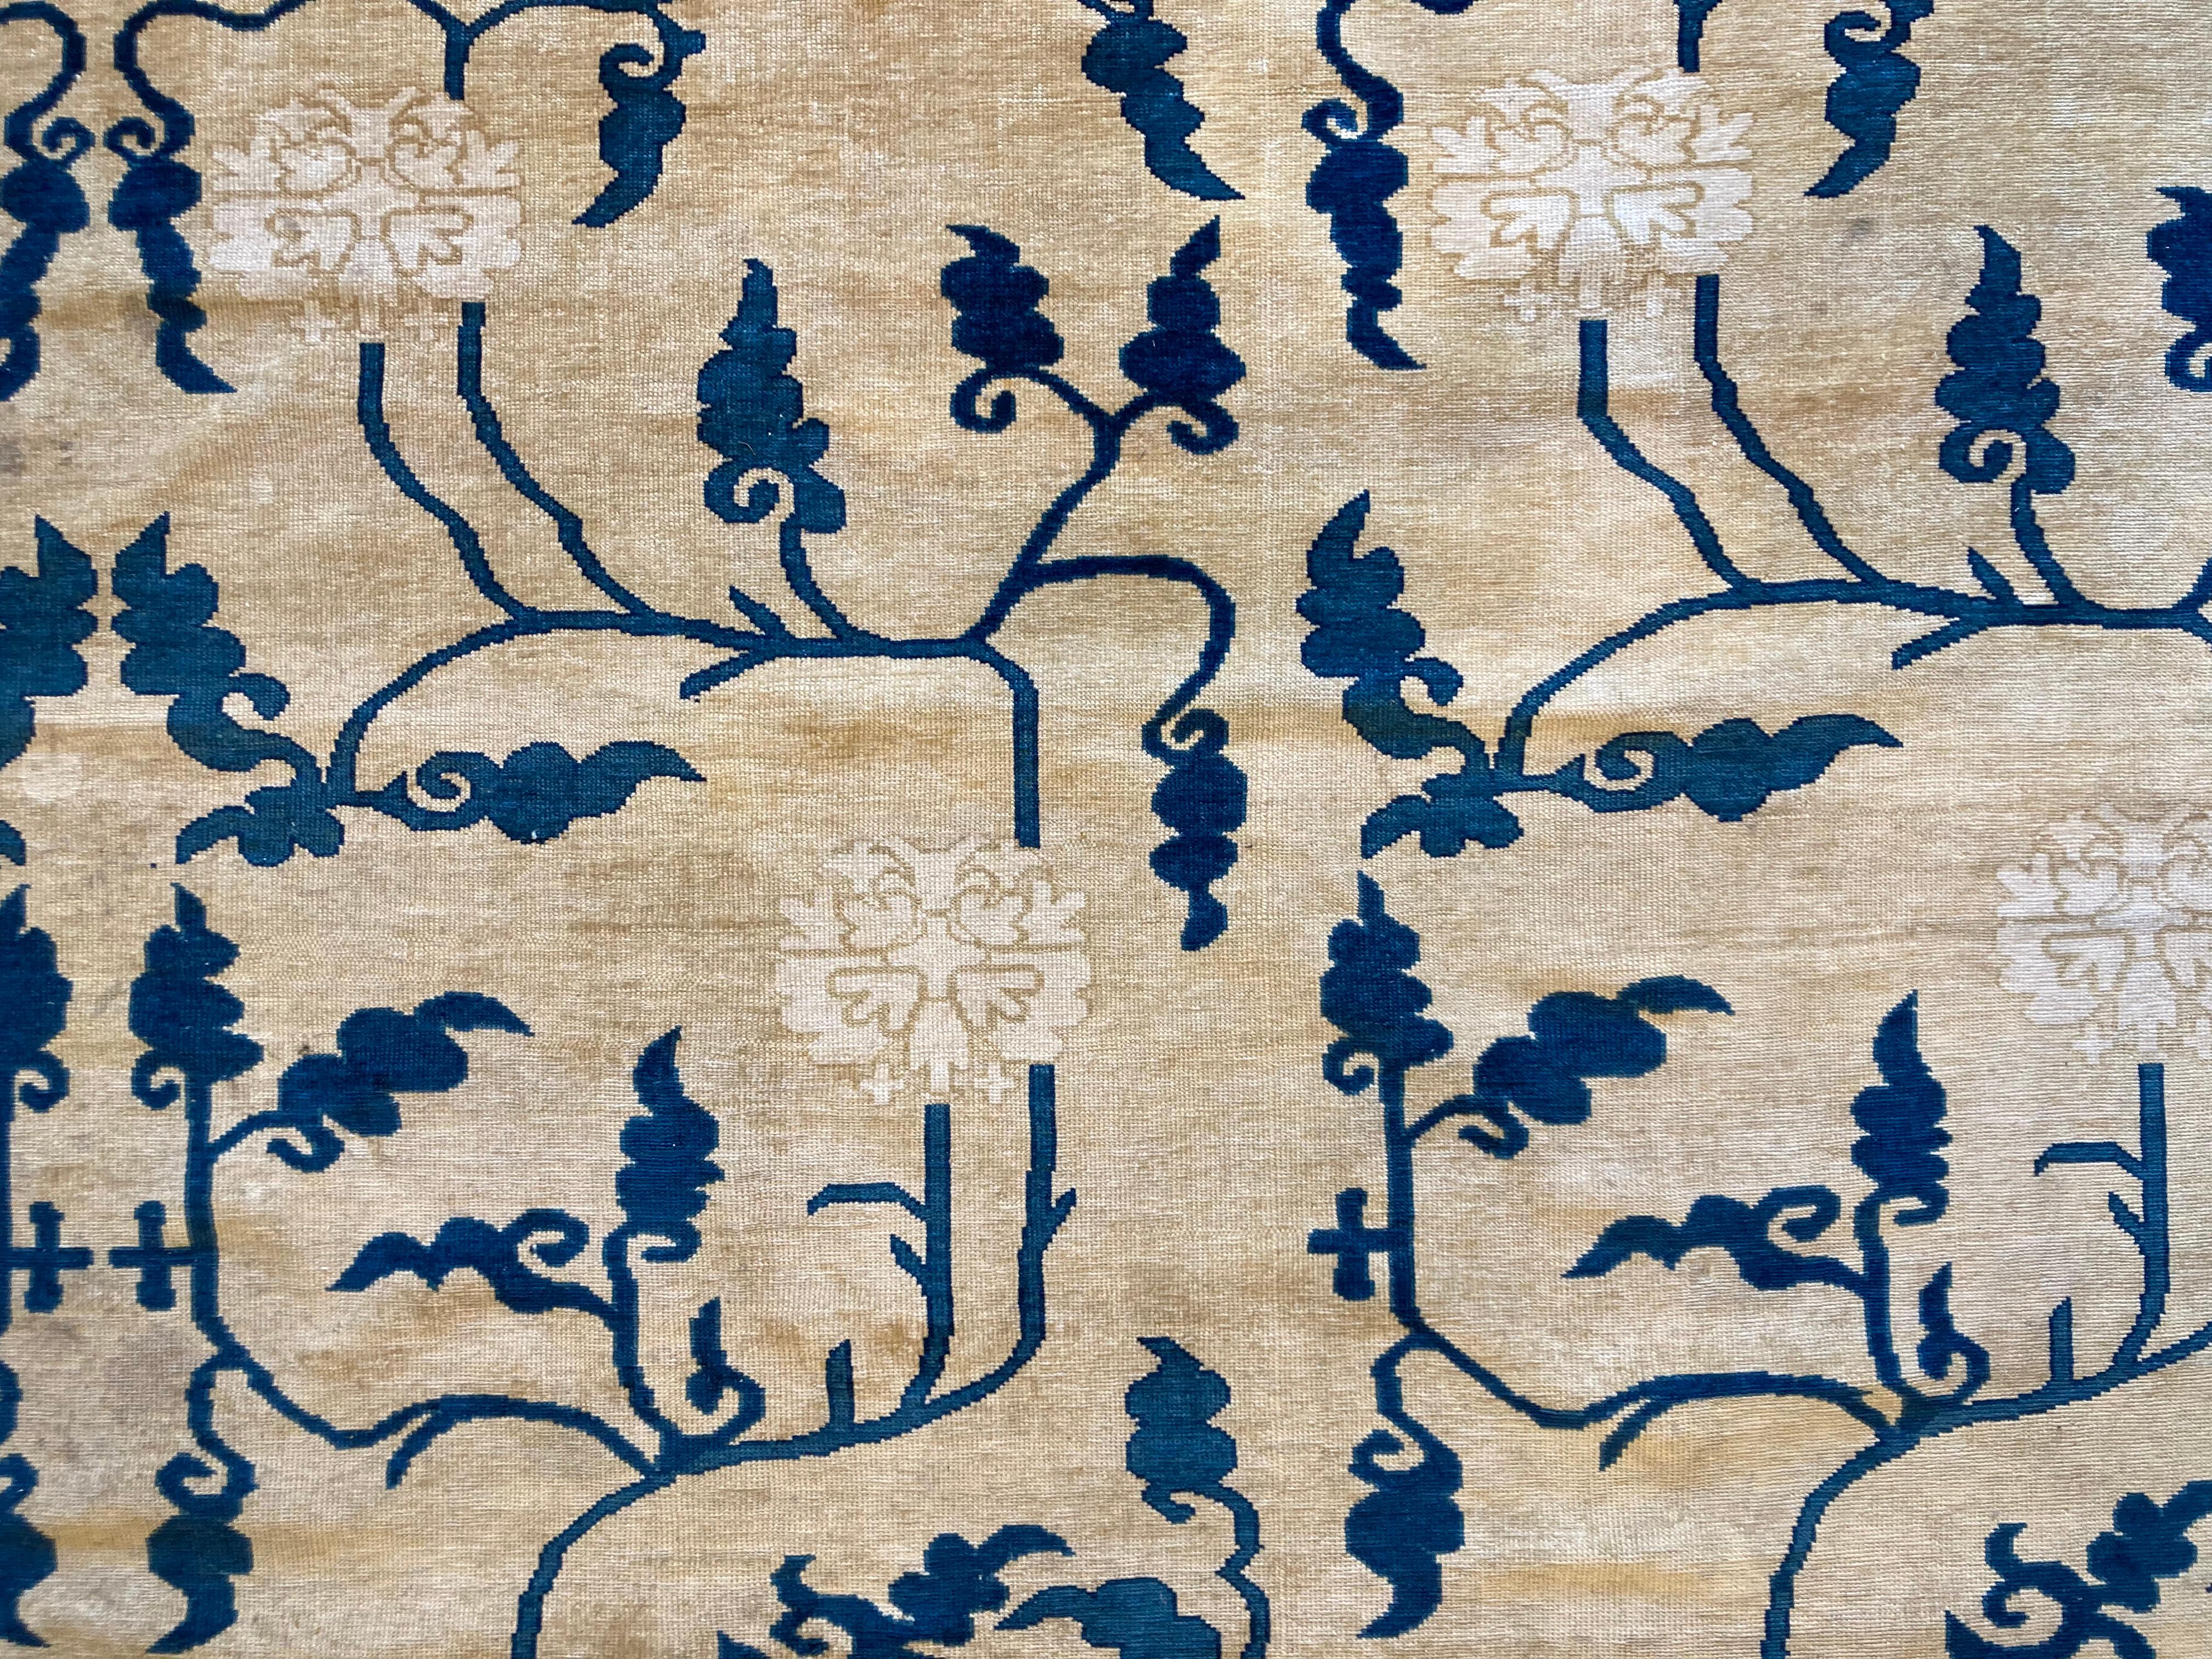 Alfombra china realizada en el siglo XX basada en los cartones de alfombras del XVIII con la misma técnica.
Su decoración a basa de un enrejado de peonias , ramas estilizadas y hojas, en varios tonos de azul, todo ello sobre un fondo beige